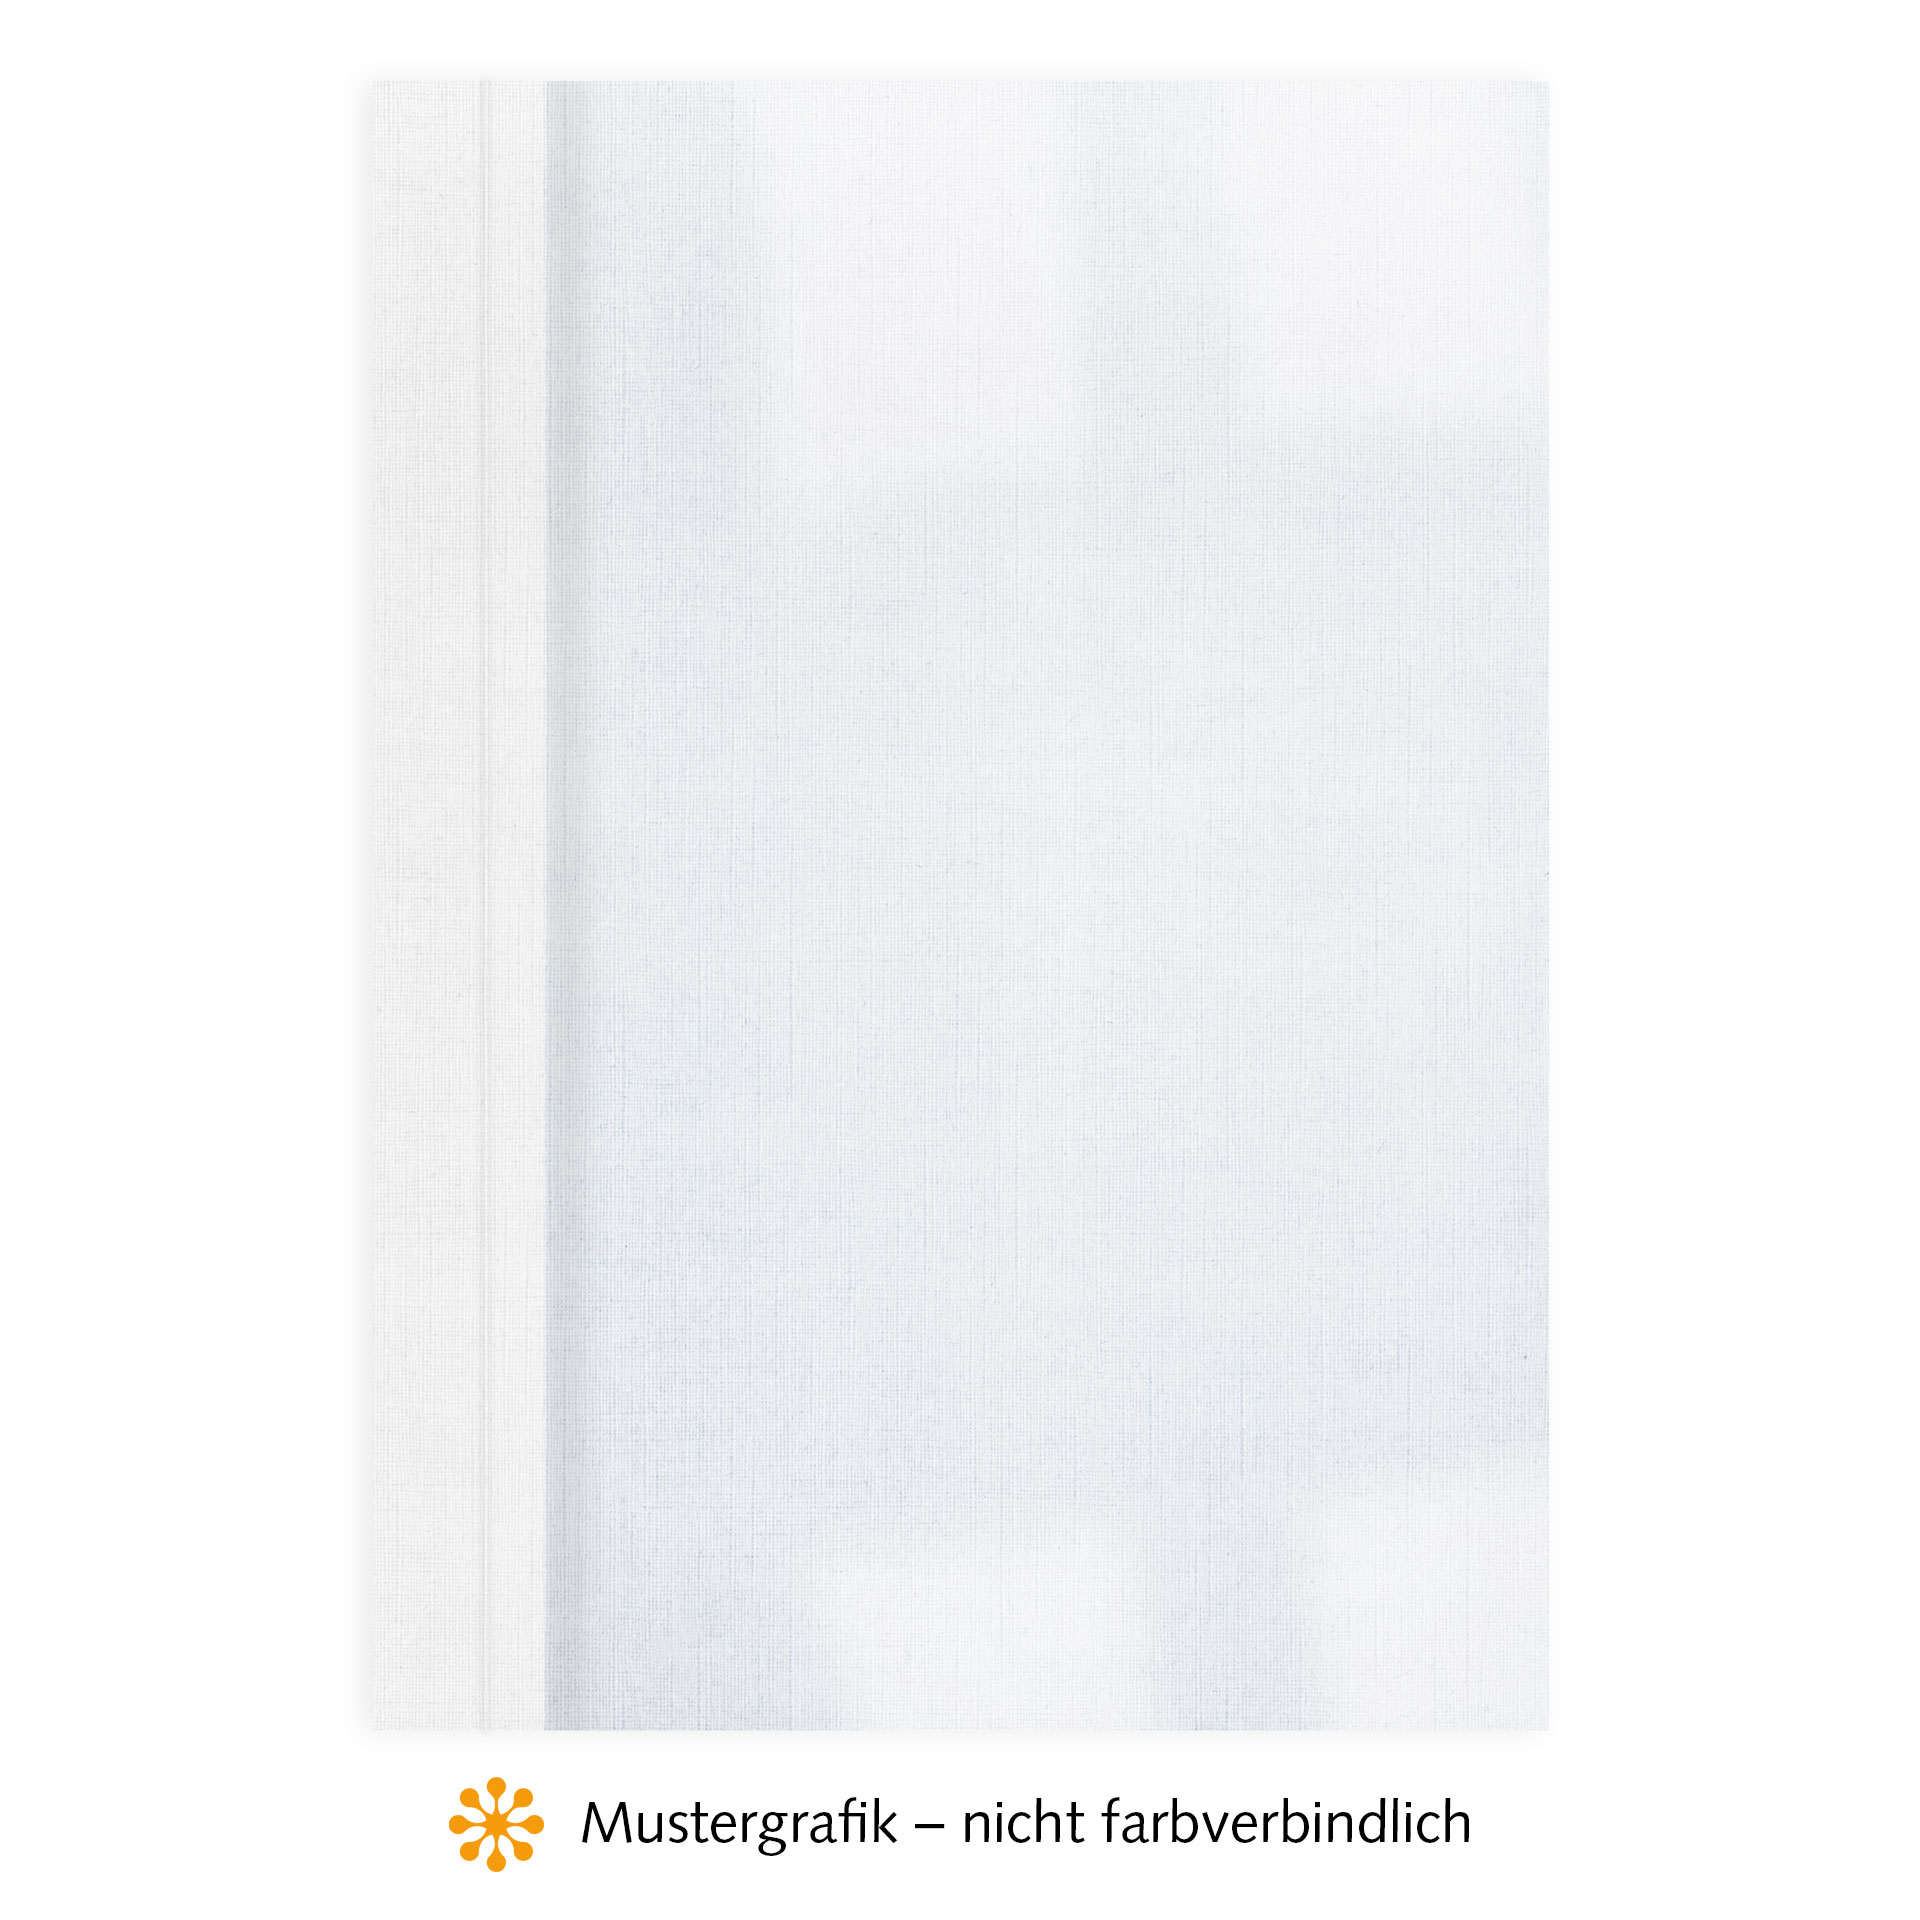 Ösenmappen DUO Cover, Vorderseite Folie KLAR transparent, Rückseite Karton Leinen, Weiß, 5 mm, 41 bis 50 Blatt